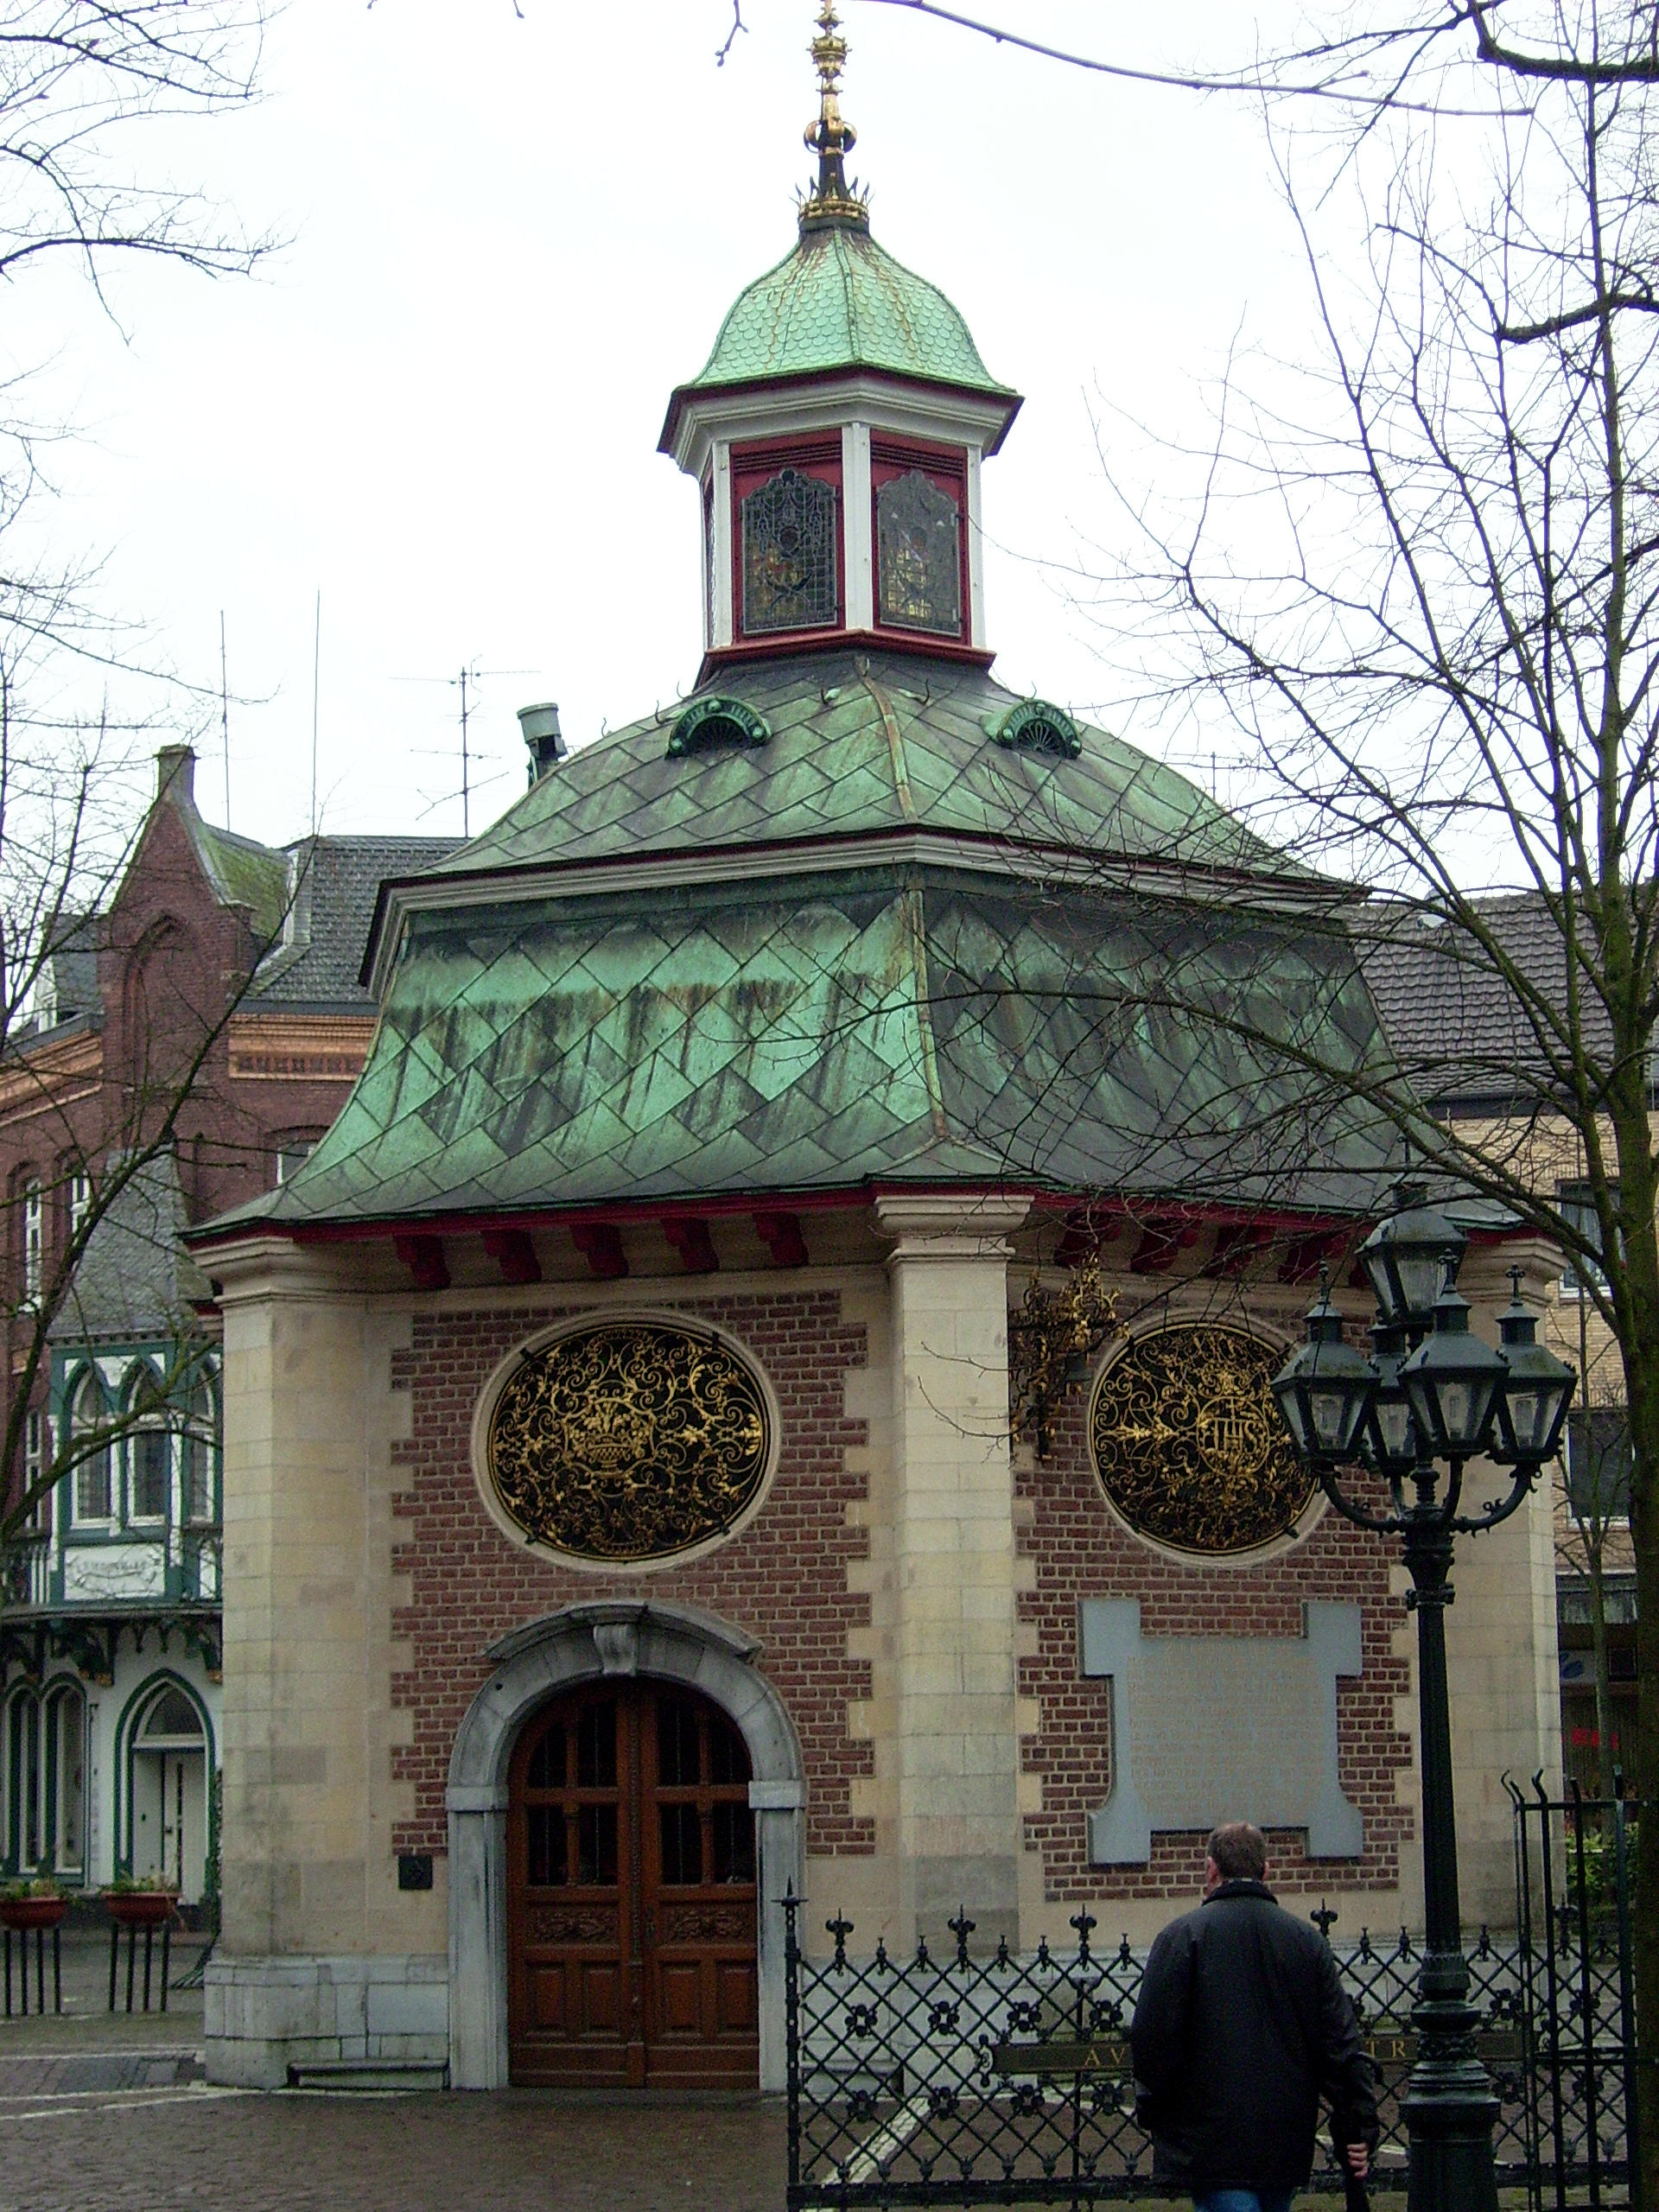 Gnadenkapelle in Kevelaer (c) Th. Blenkers/pixelio.de